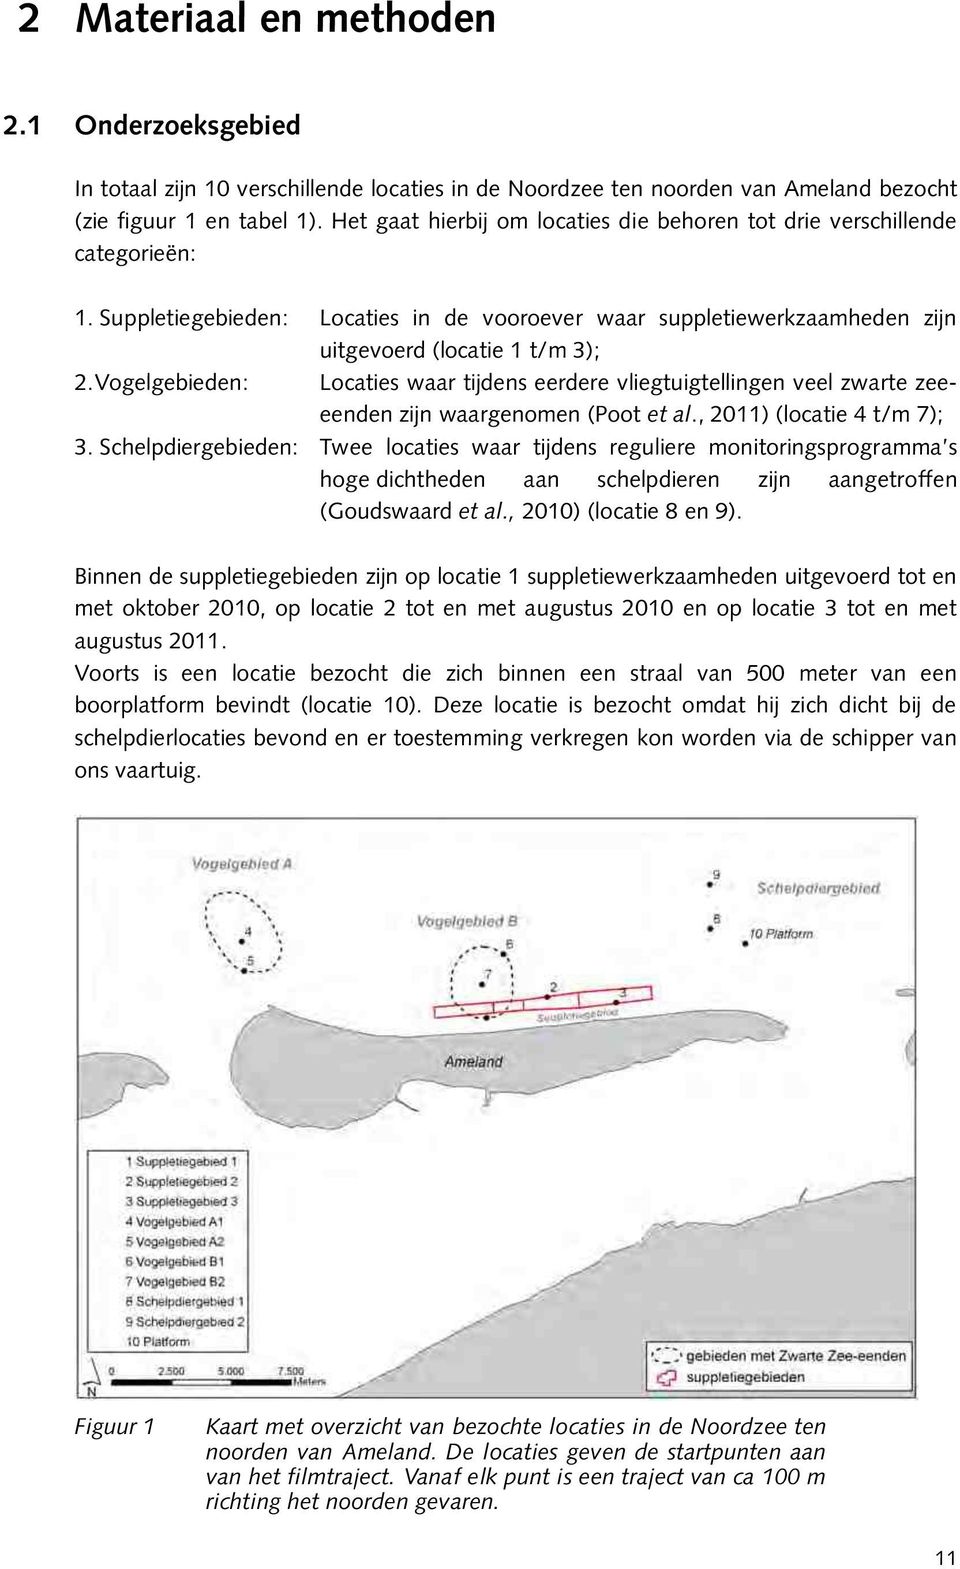 Vogelgebieden: Locaties waar tijdens eerdere vliegtuigtellingen veel zwarte zeeeenden zijn waargenomen (Poot et al., 2011) (locatie 4 t/m 7); 3.